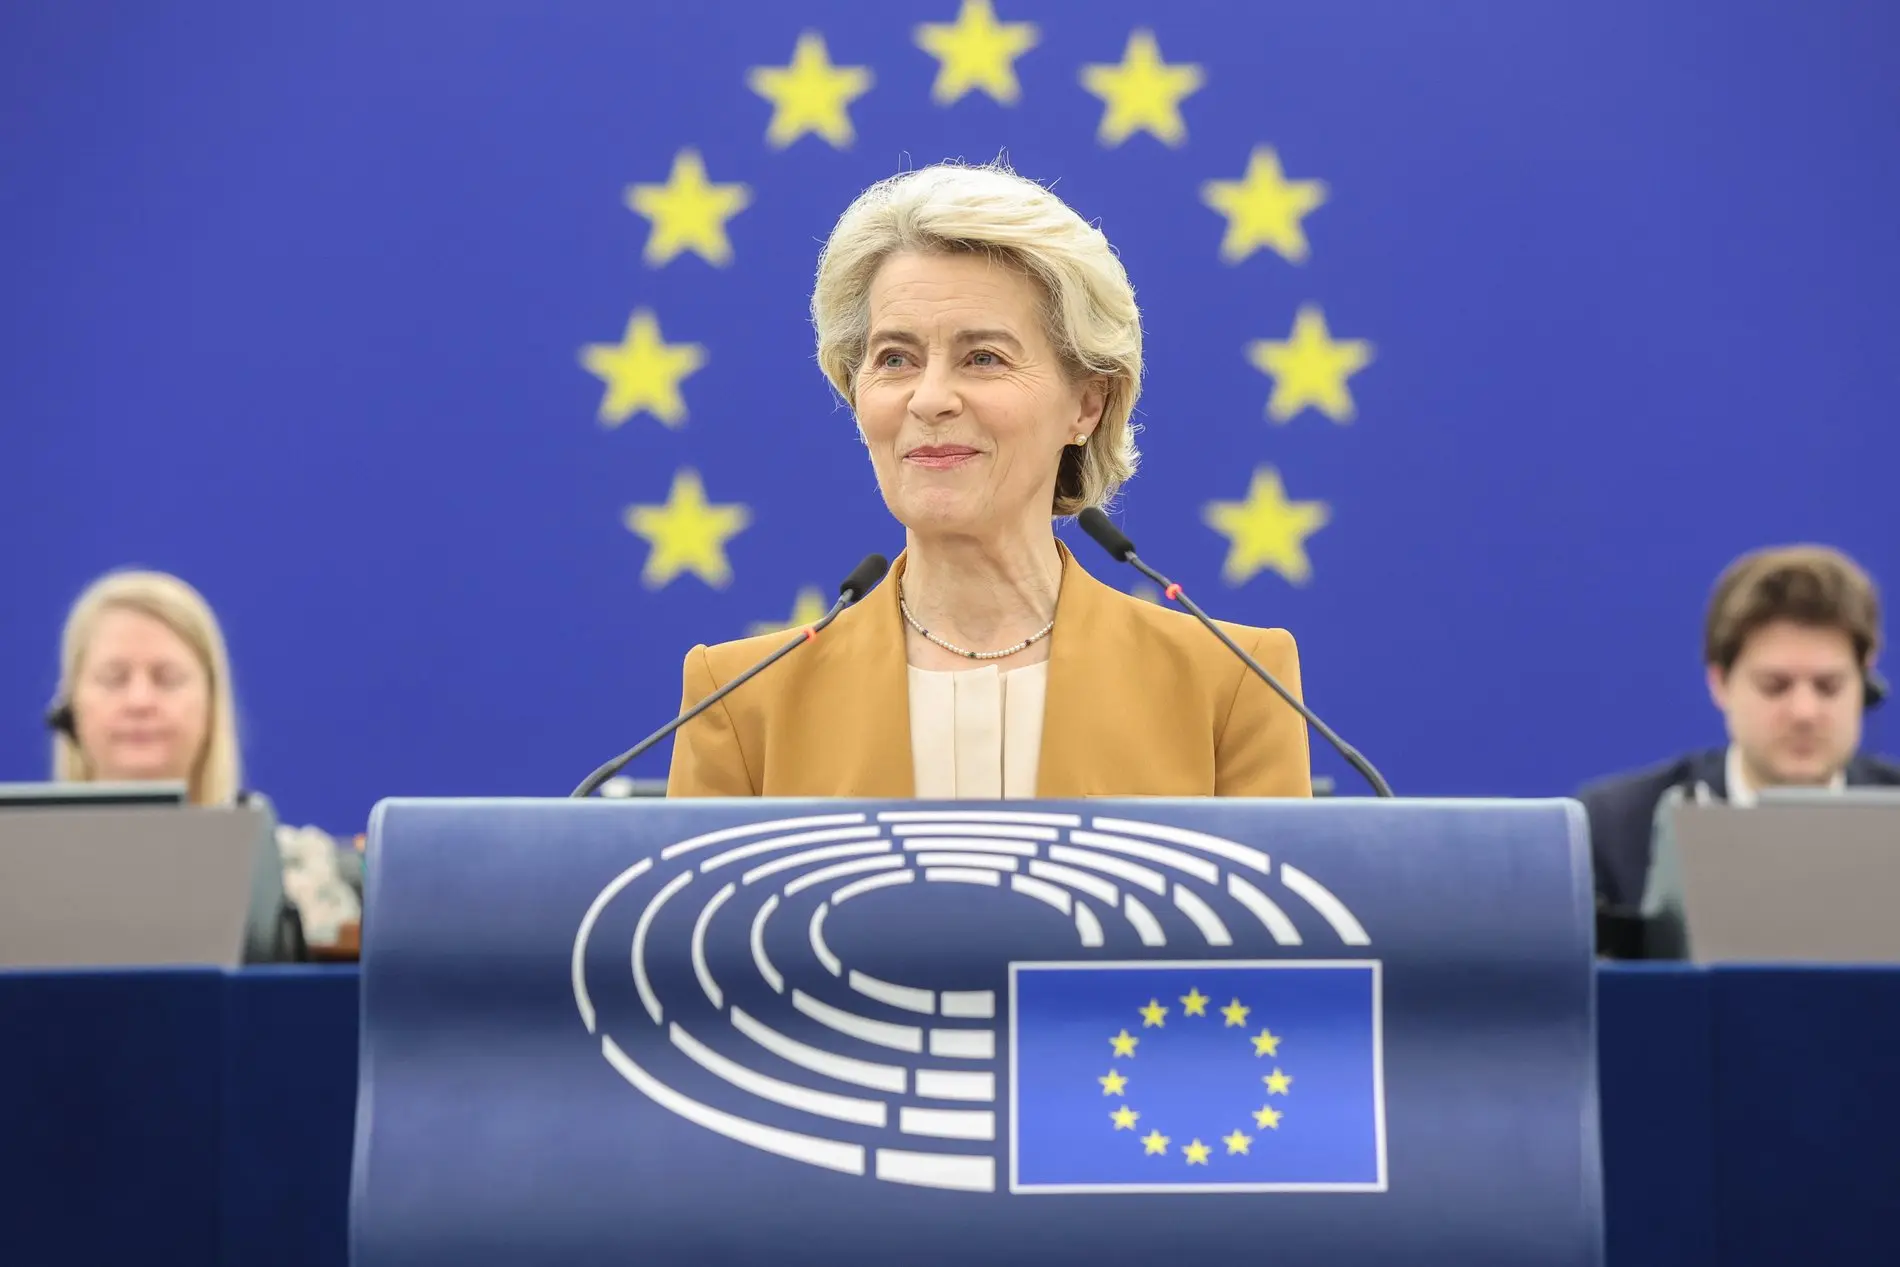 Ursula von der Leyen am Rednerpult des Europäischen Parlaments vor der EU-Flagge